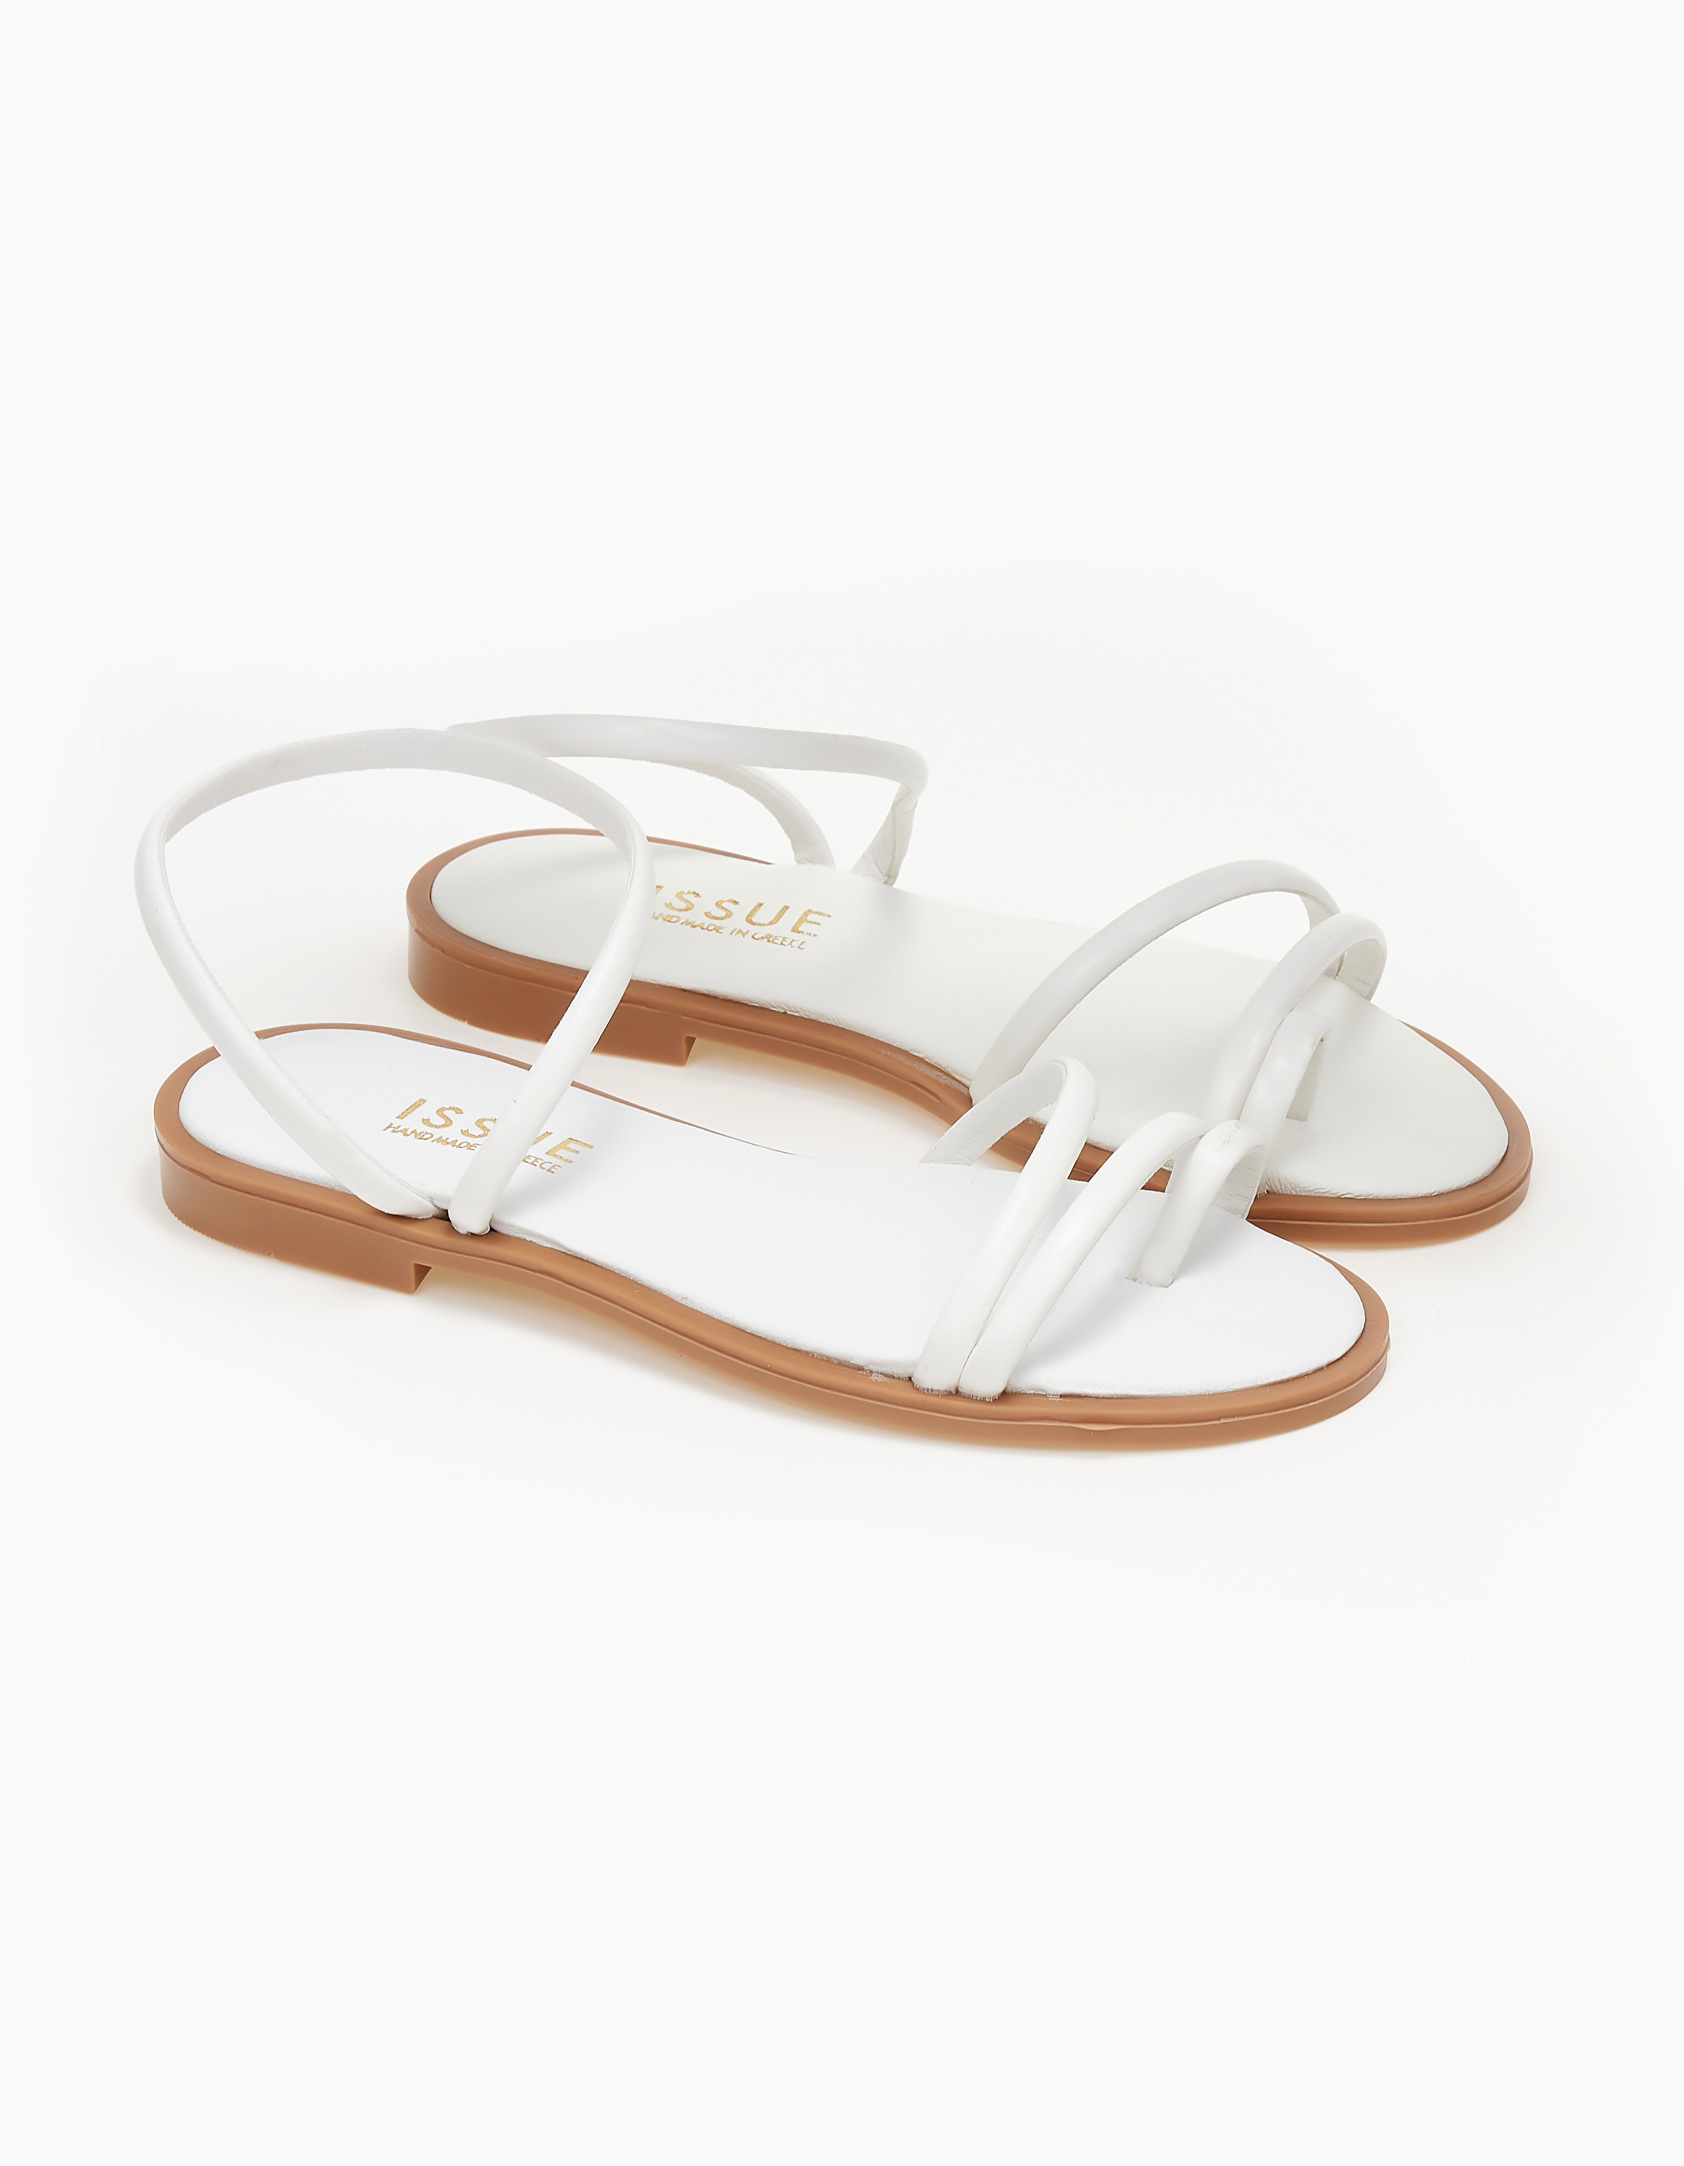 Παπούτσια > Σανδάλια Γυναικεία σανδάλια - Λευκό